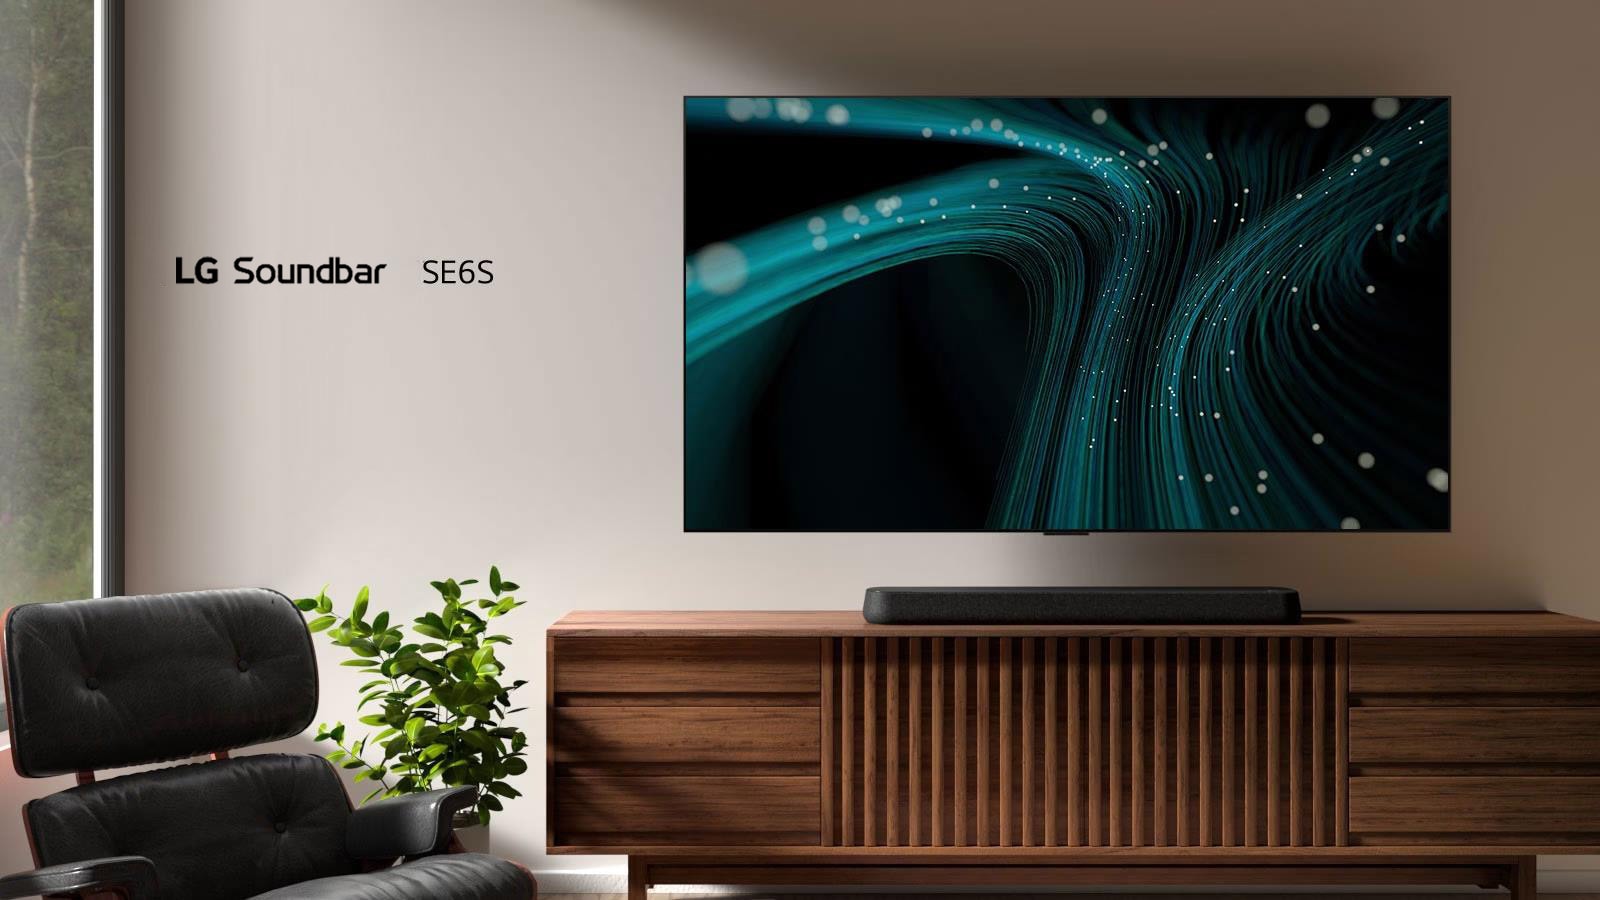 مكبر الصوت SE6S من LG على الخزانة الخشبية. يوجد بالأعلى تلفاز مثبت على الحائط بصور موجات صوتية زرقاء وأضواء منقطة. على الجانب الأيسر، تظهر نافذة قليلاً ويوجد كرسي مائل بجلد أسود أمام نبات أخضر.